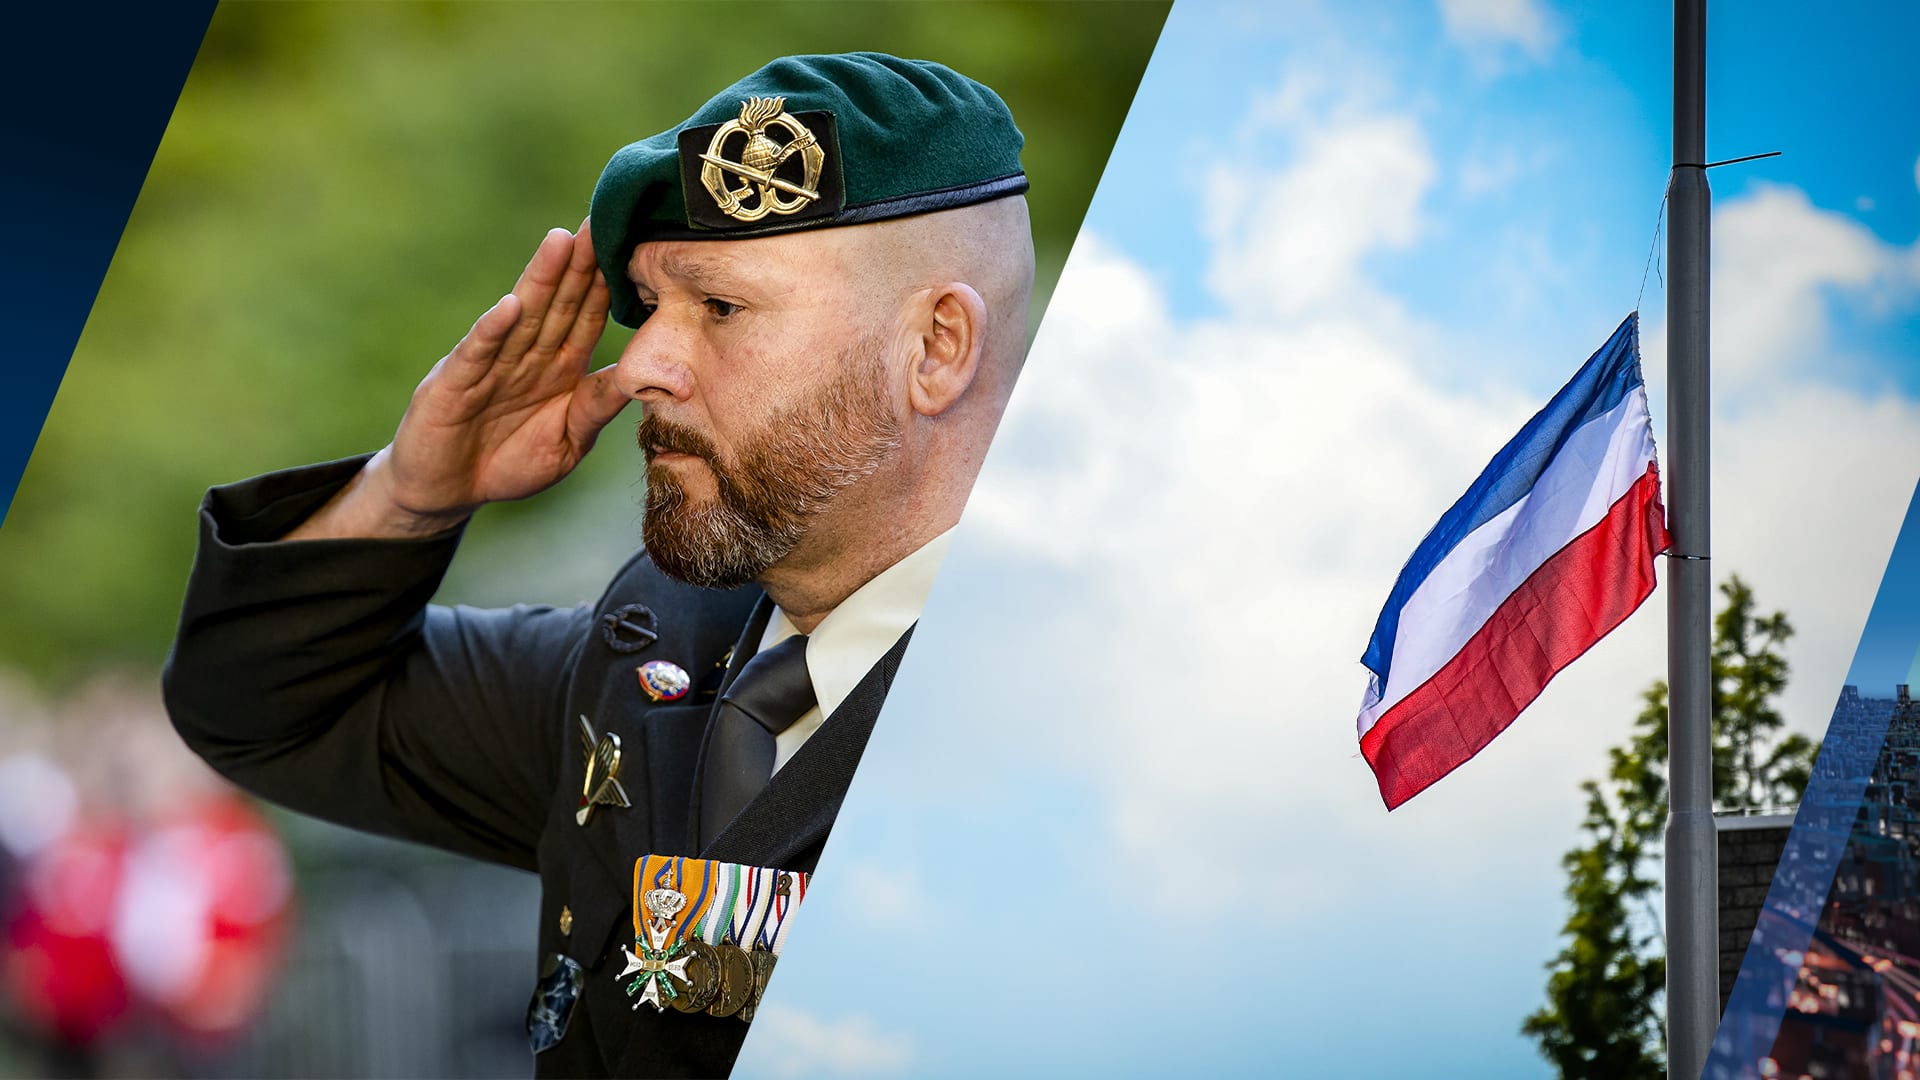 Marco Kroon over omgekeerde Nederlandse vlag: 'Belediging voor militairen'